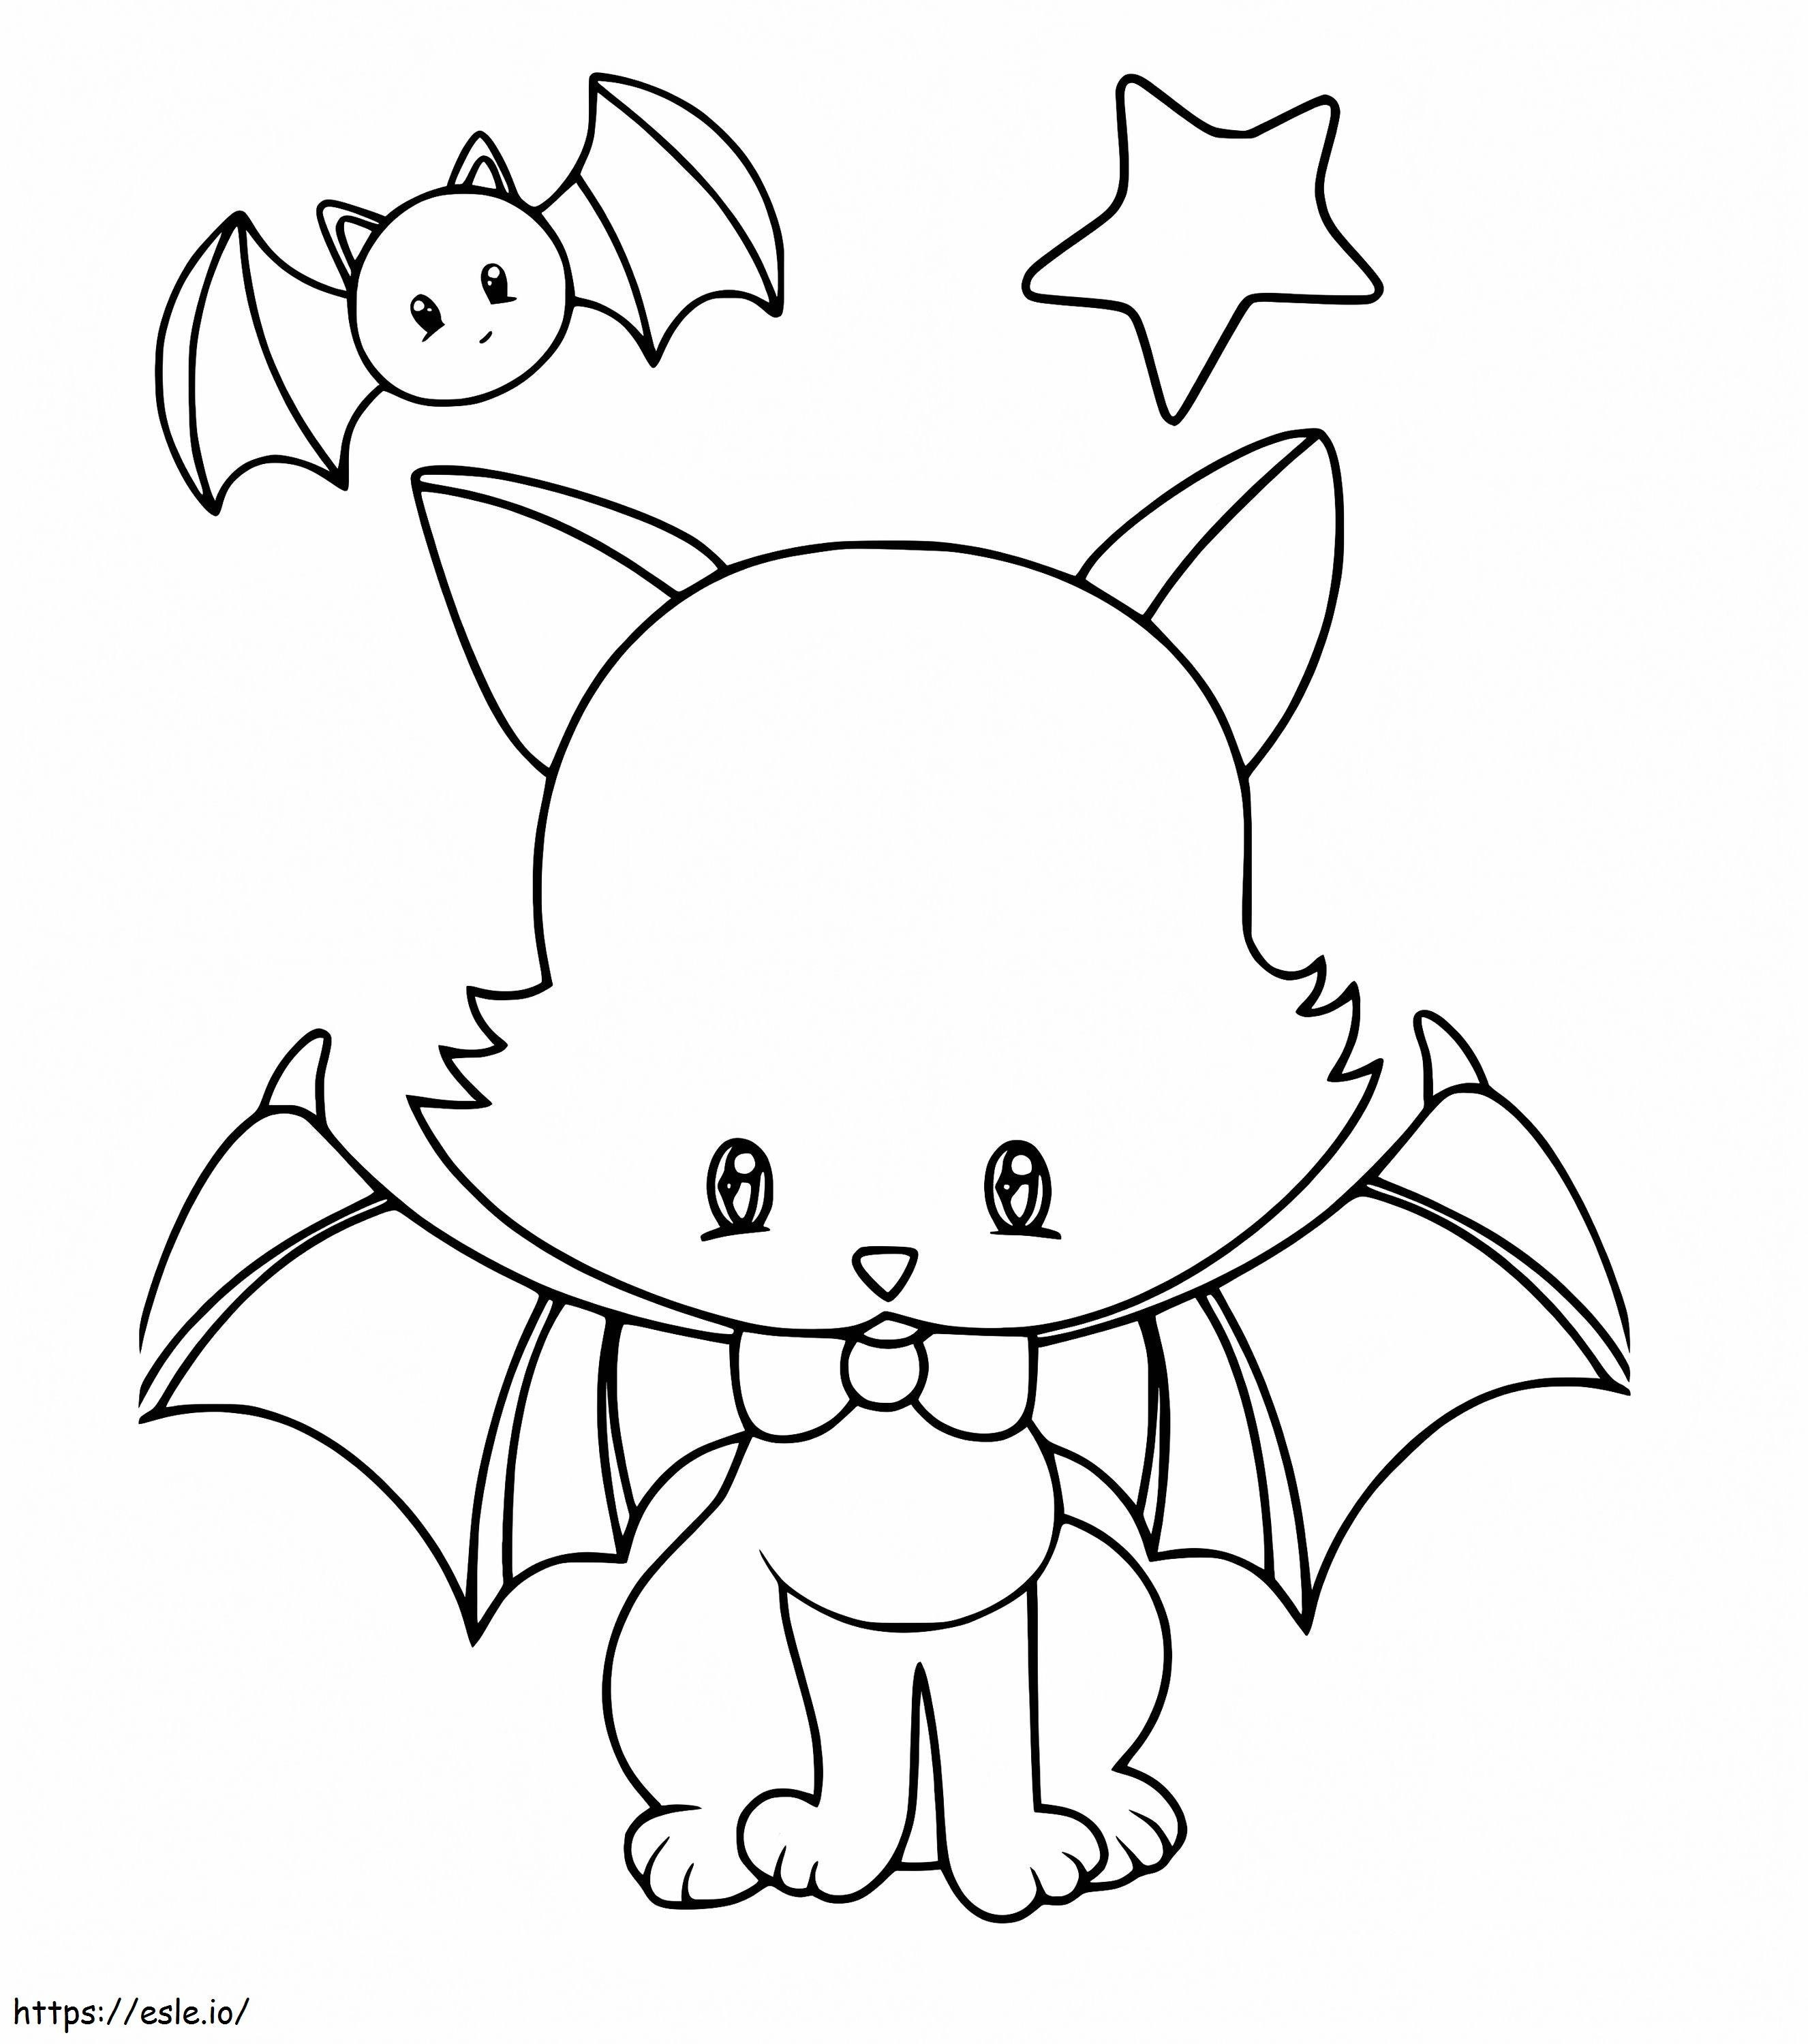 Morcego gato fofo para colorir